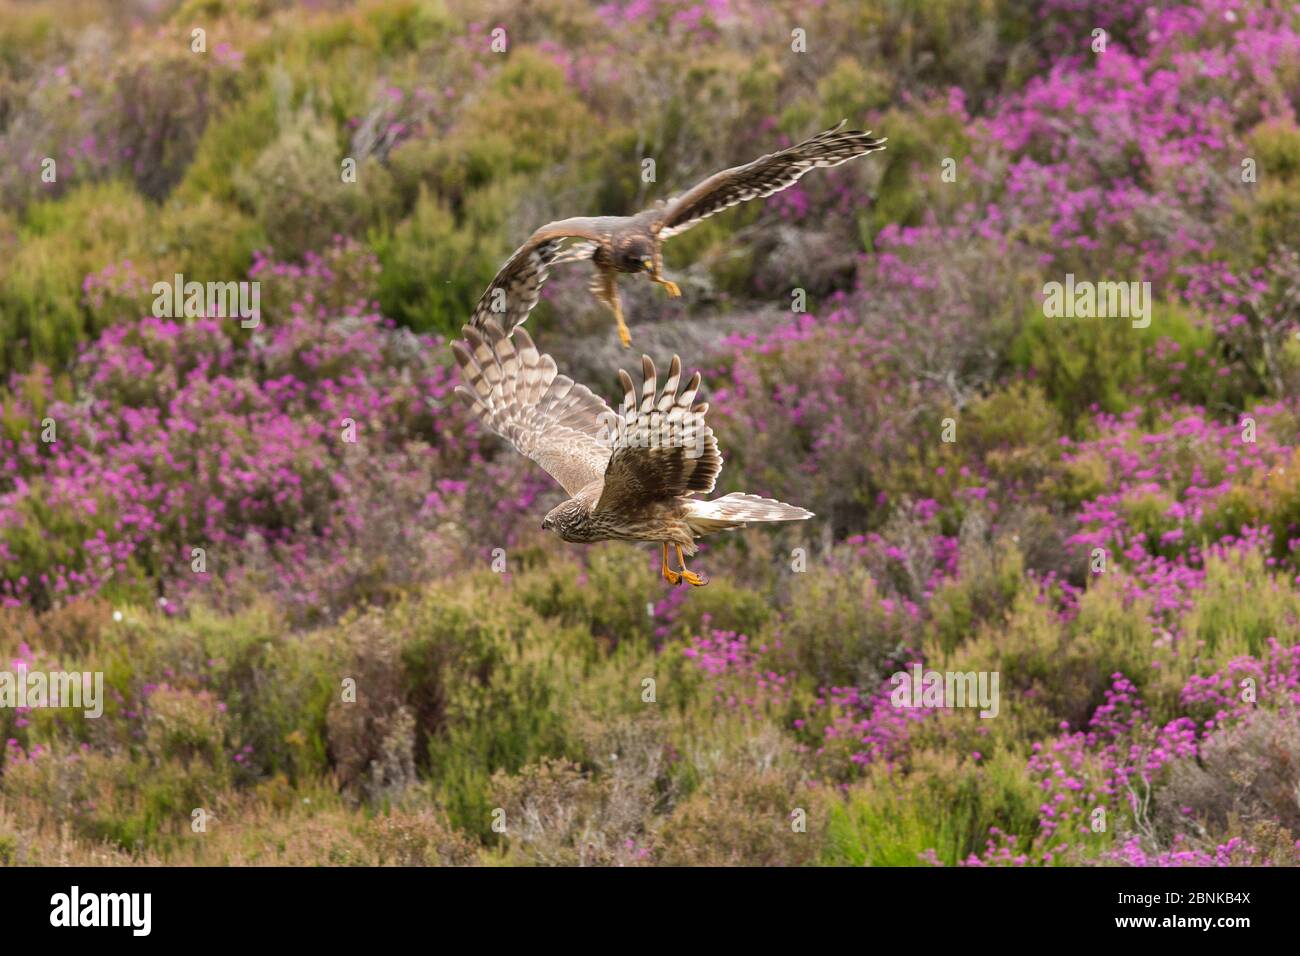 Hen Harrier (Circus cyaneus) adulte femelle et poussin à part récente dans l'habitat des landes, Écosse, Royaume-Uni. Juillet. Banque D'Images